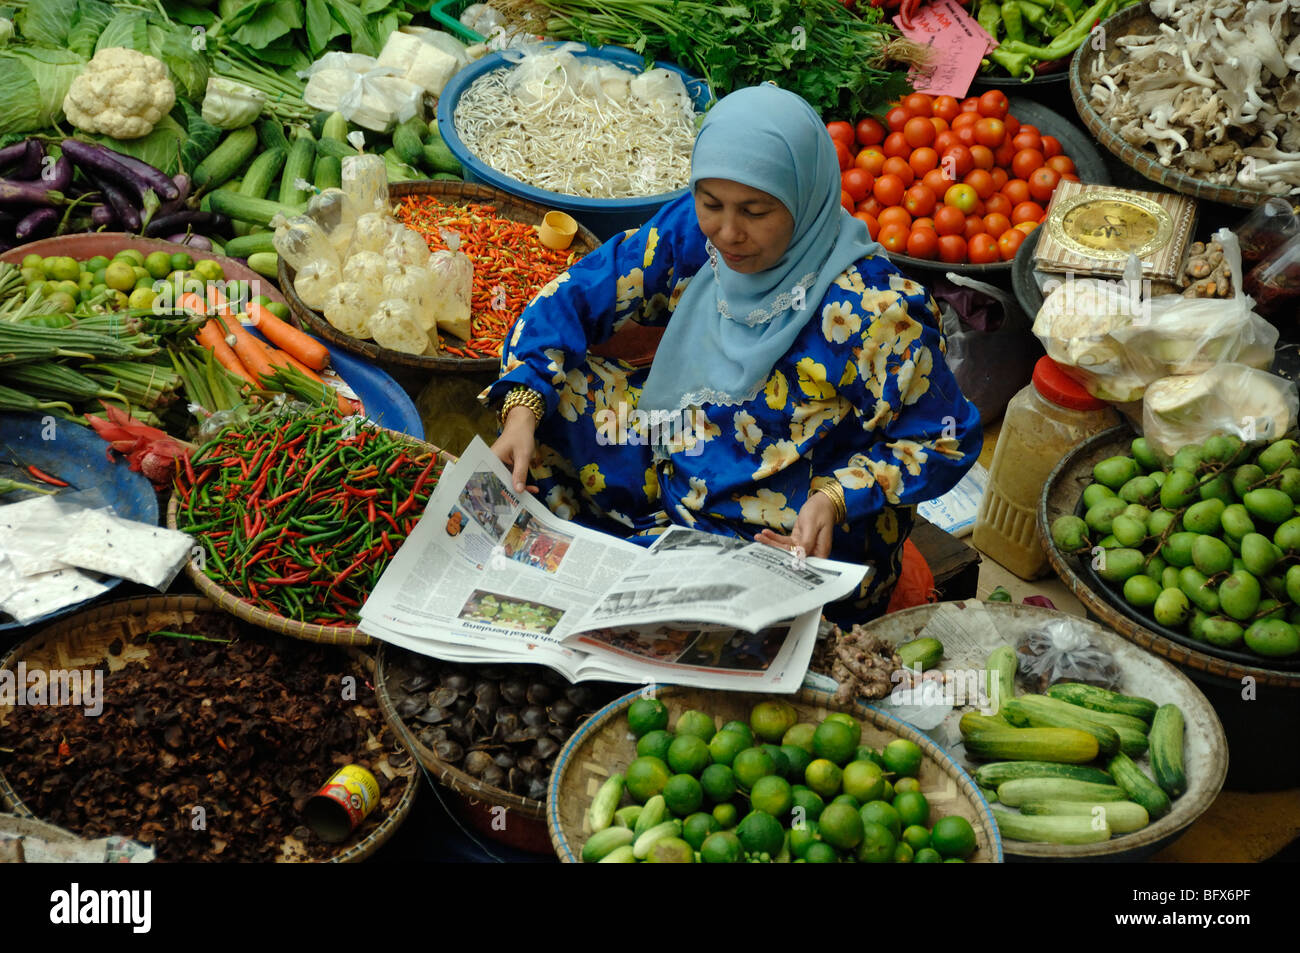 Le malais de Malaisie ou femme lisant un journal quotidien sur l'étal de légumes du marché, Marché Central, Kota Bahru, Malaisie Banque D'Images